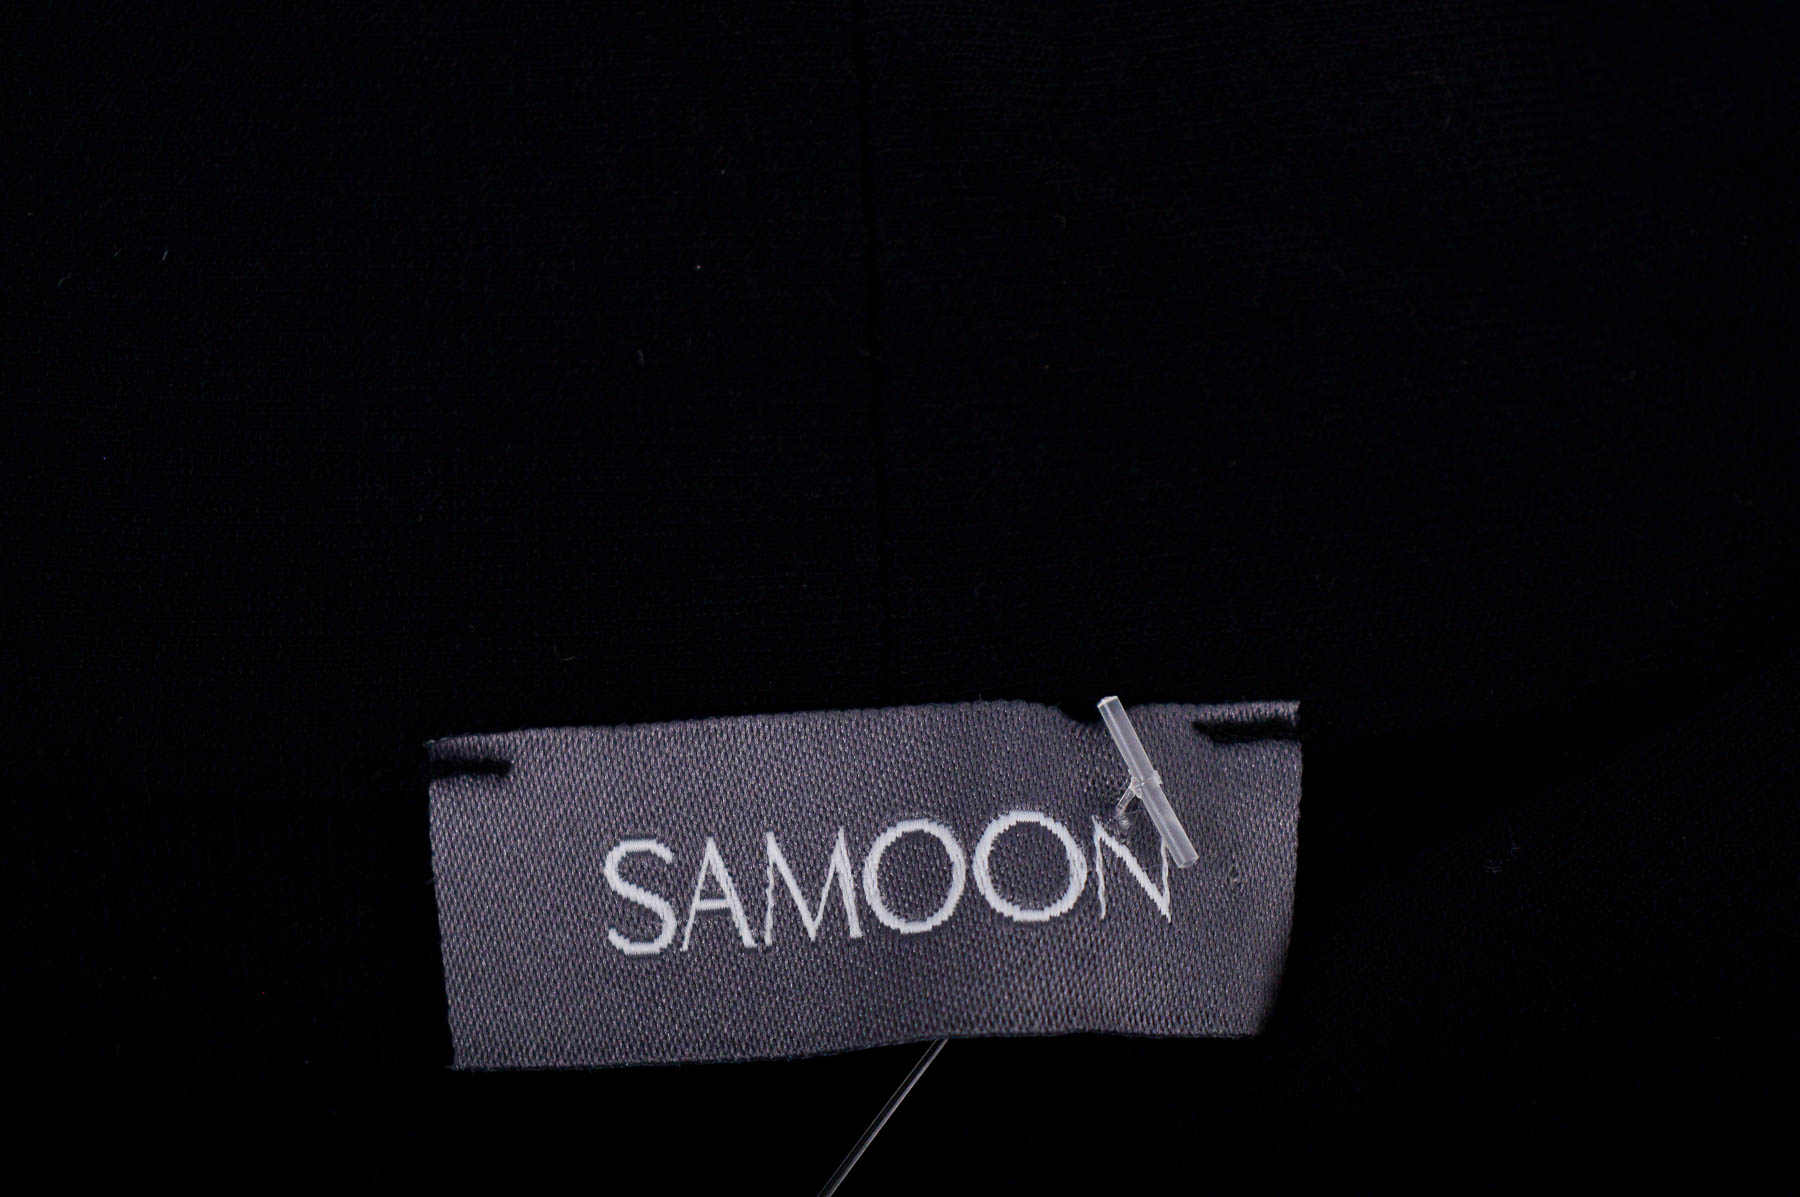 Women's blouse - Samoon - 2